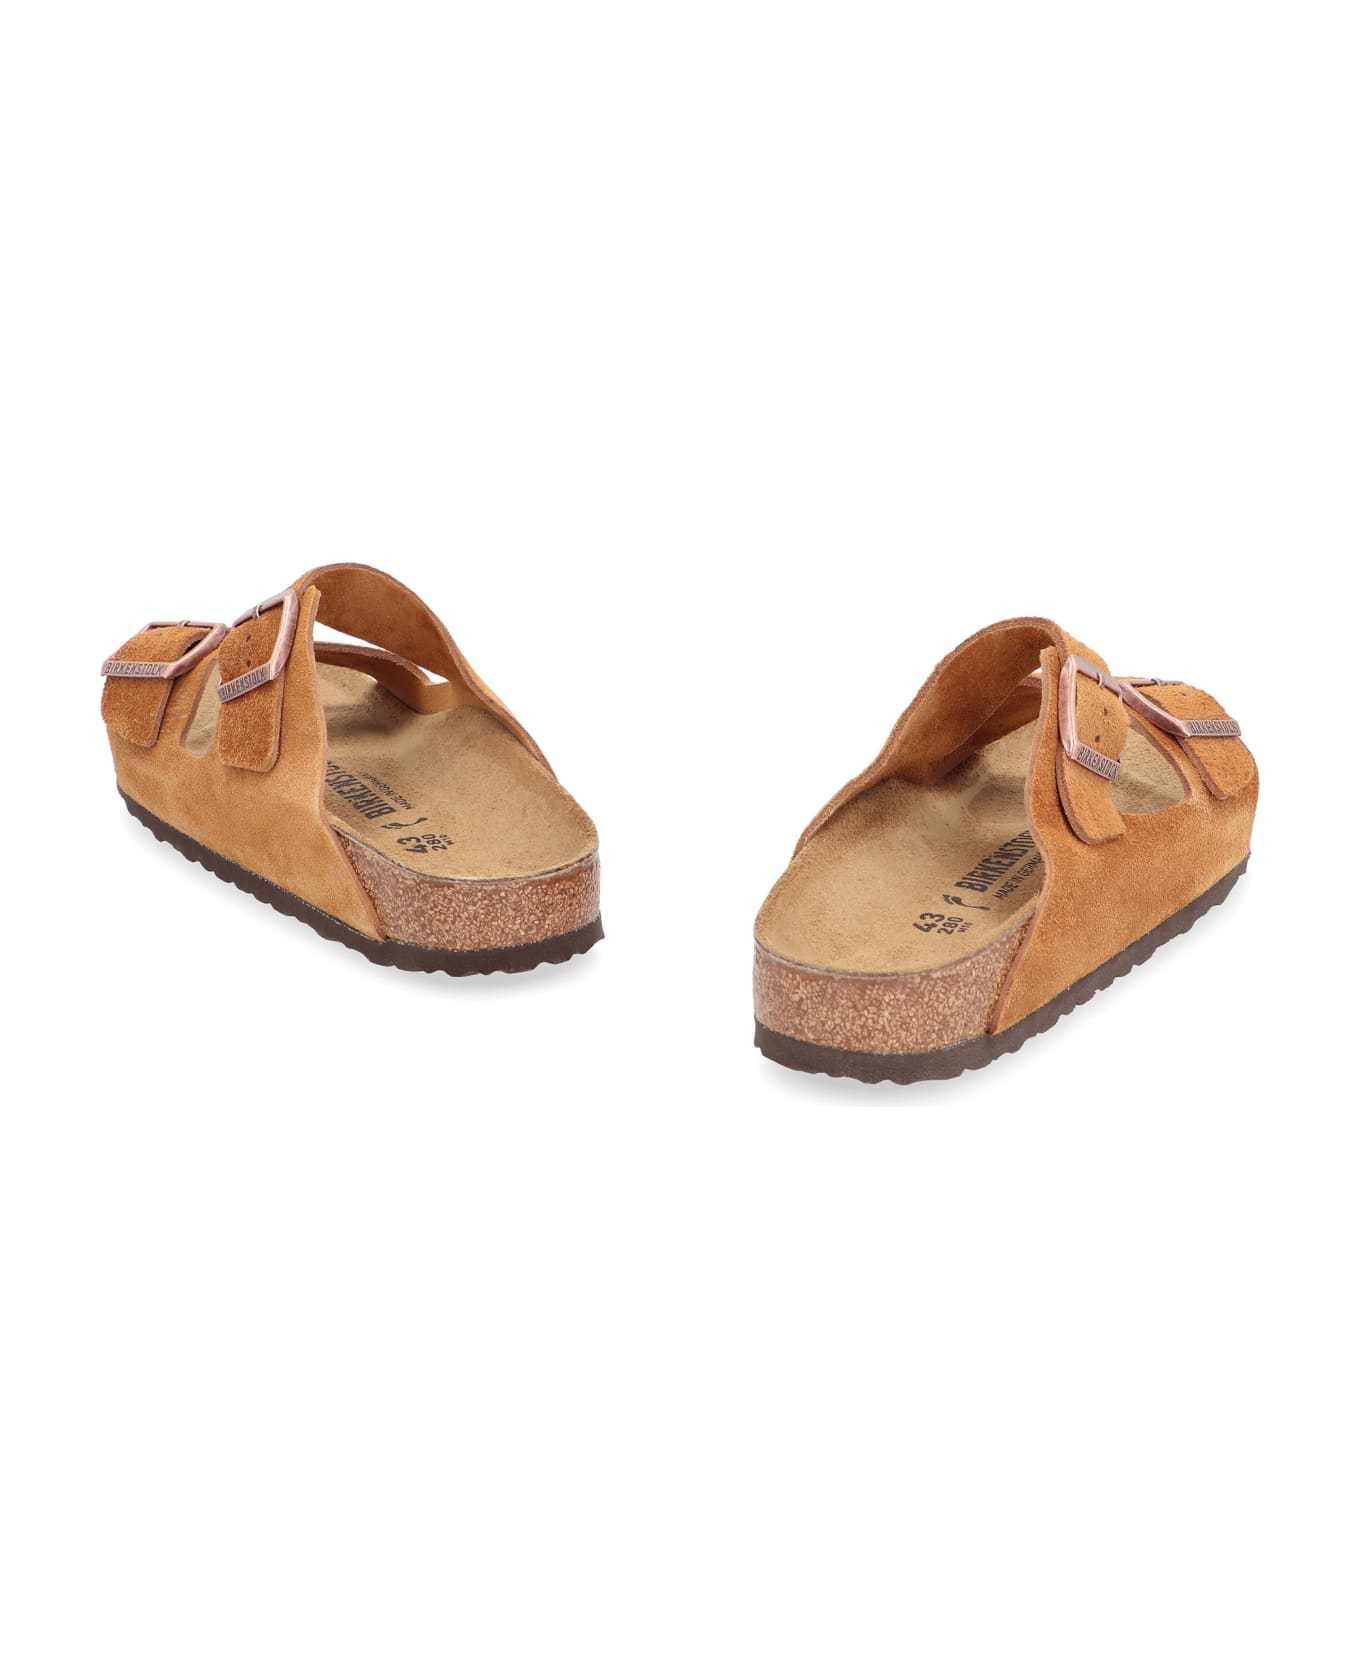 Birkenstock Arizona Sandals - brown